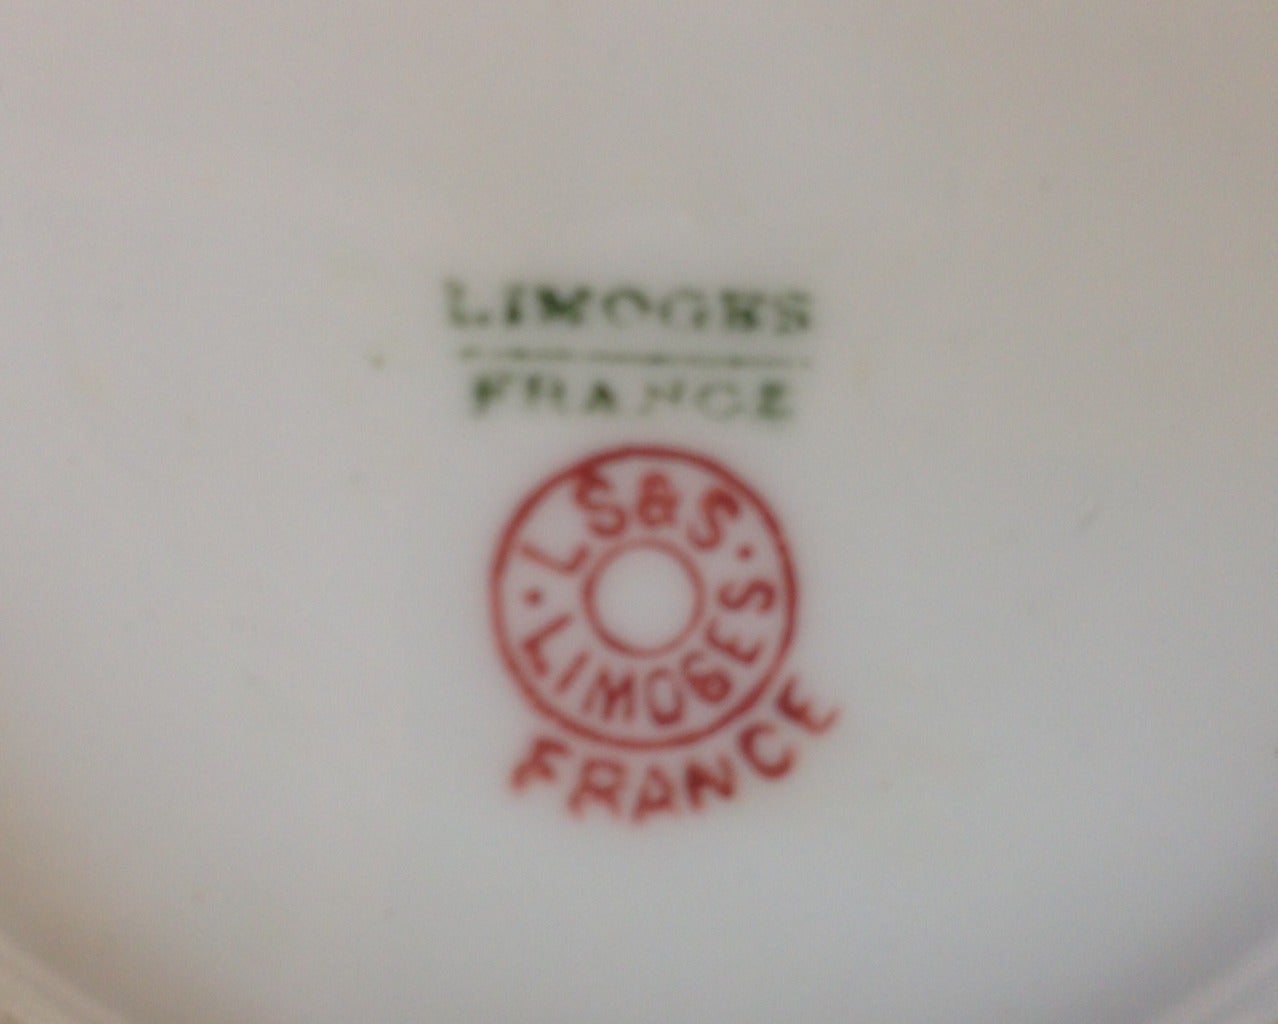 Um 1890
Signiert unten rechts
Lewis Straus und Söhne Importeure
Gestempelt Limoges, Frankreich